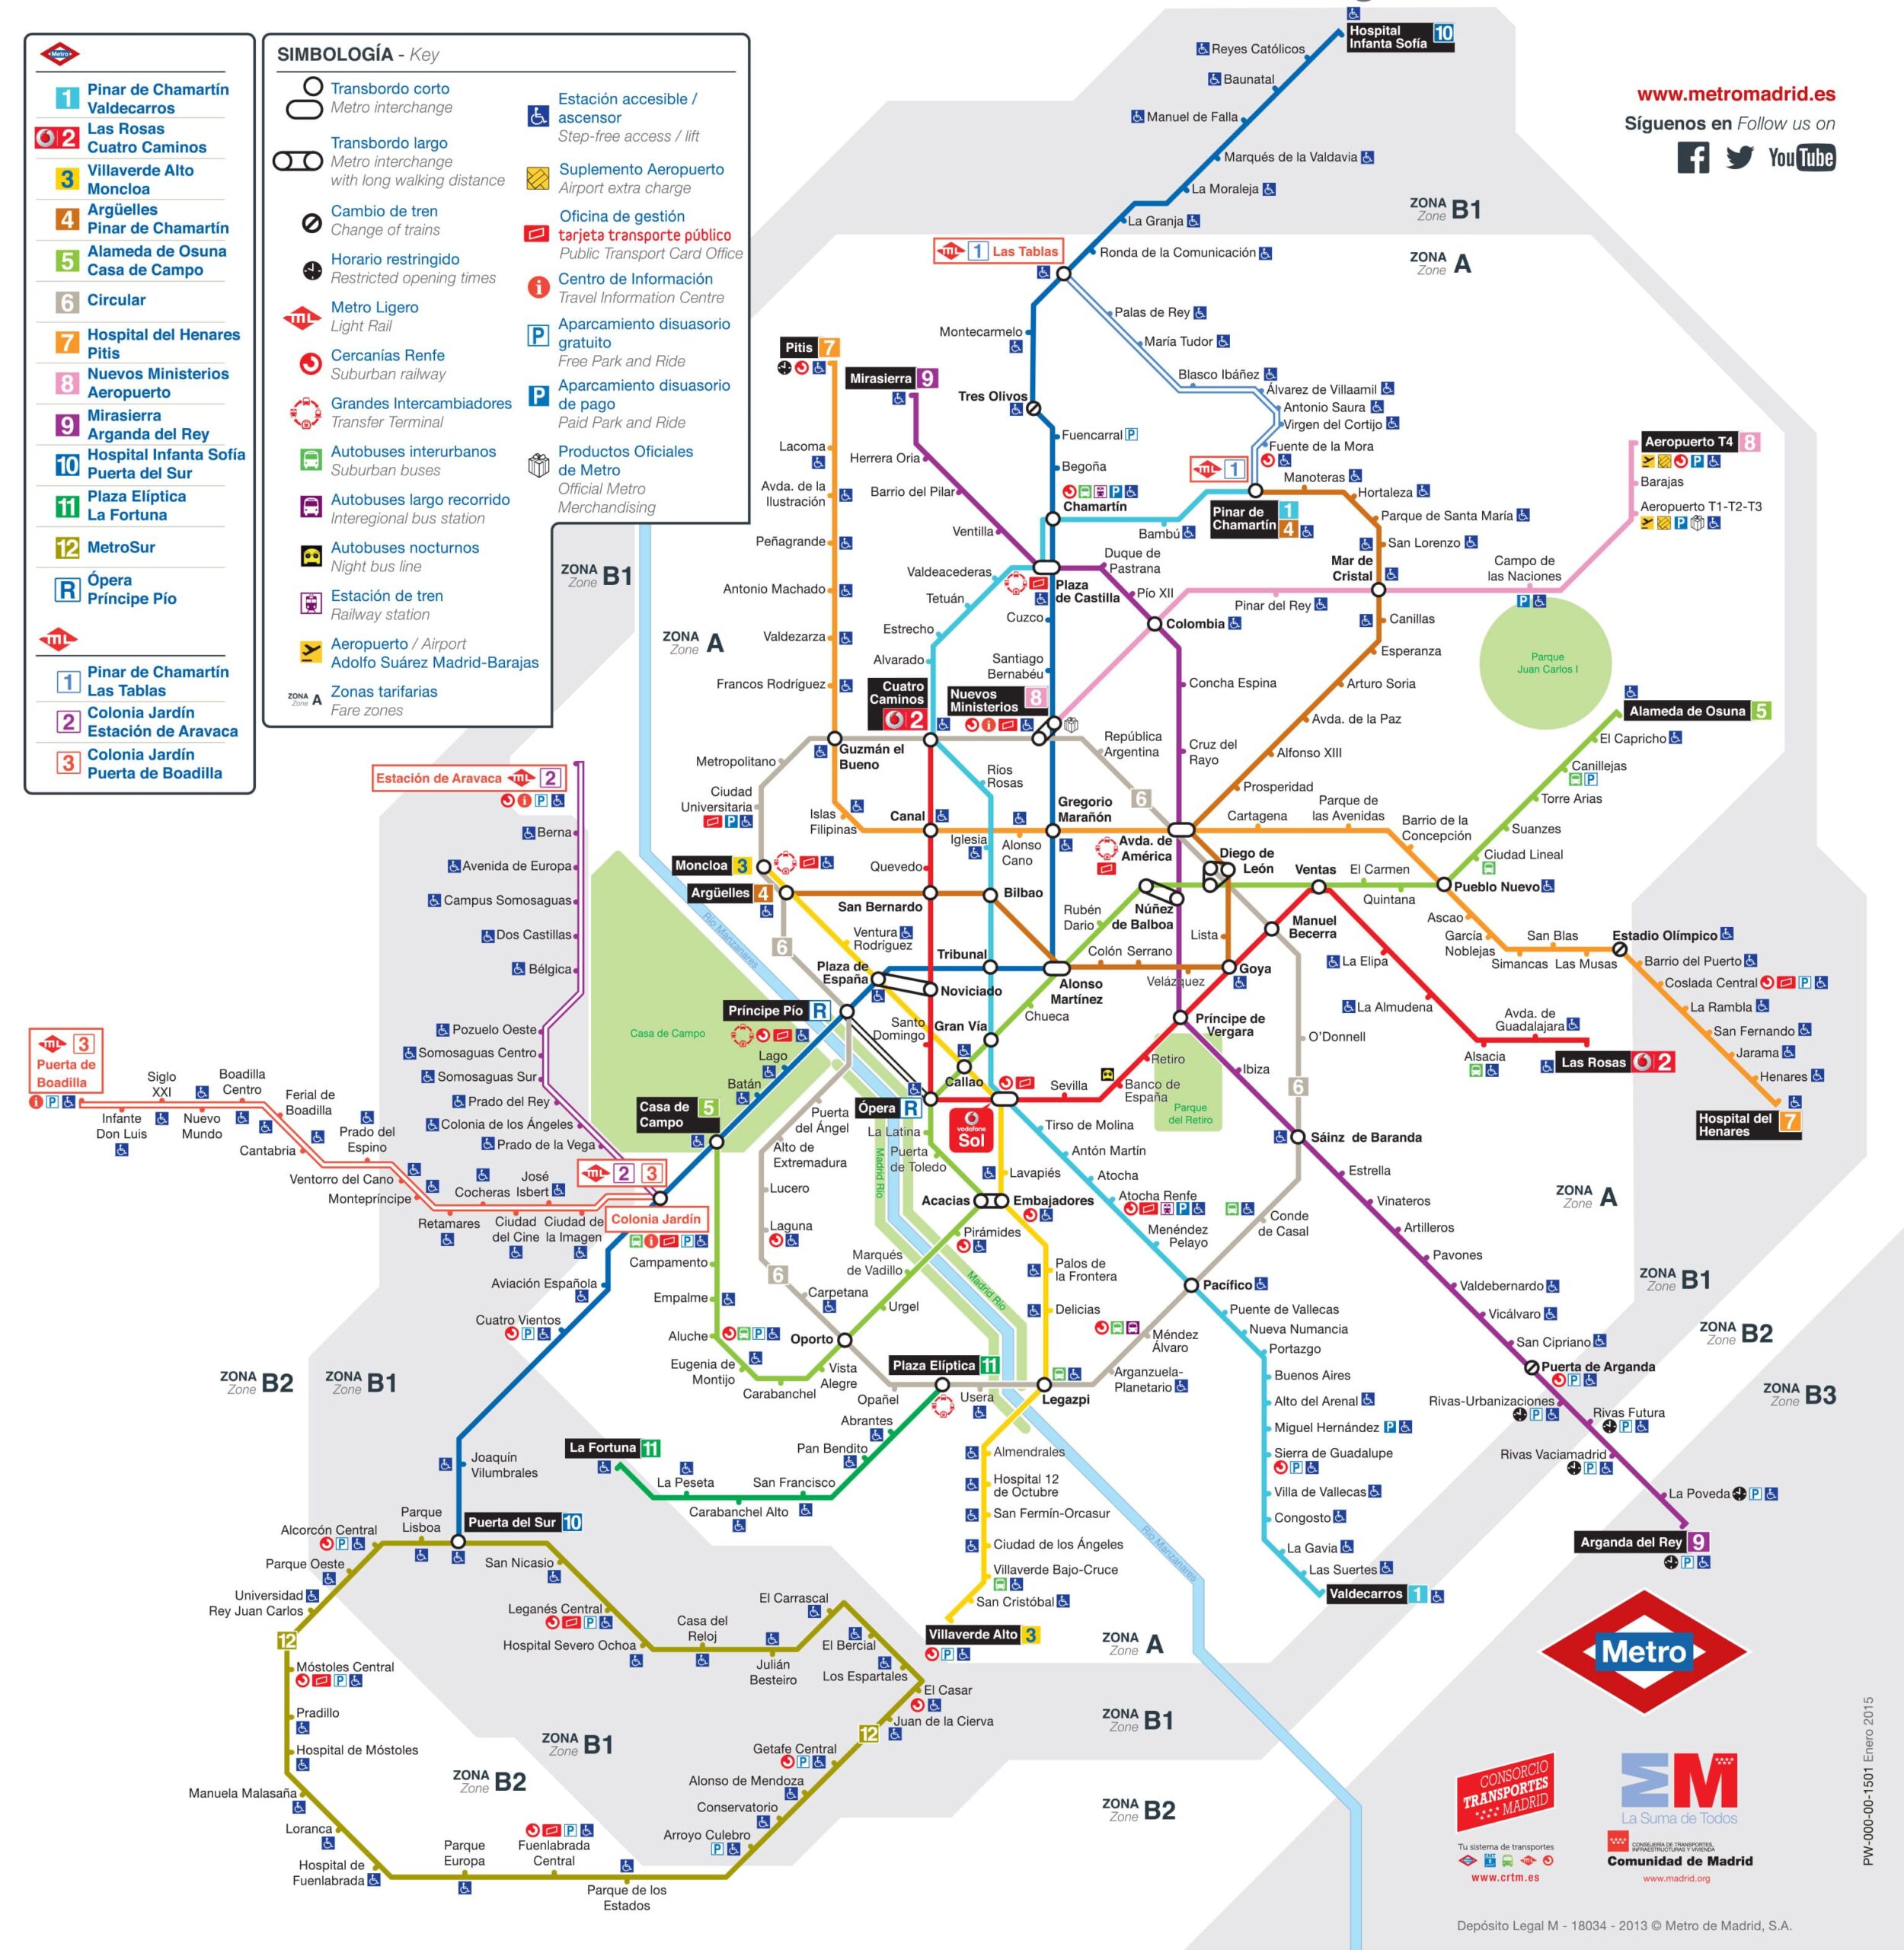 Mappa e piano della metropolitana di Madrid